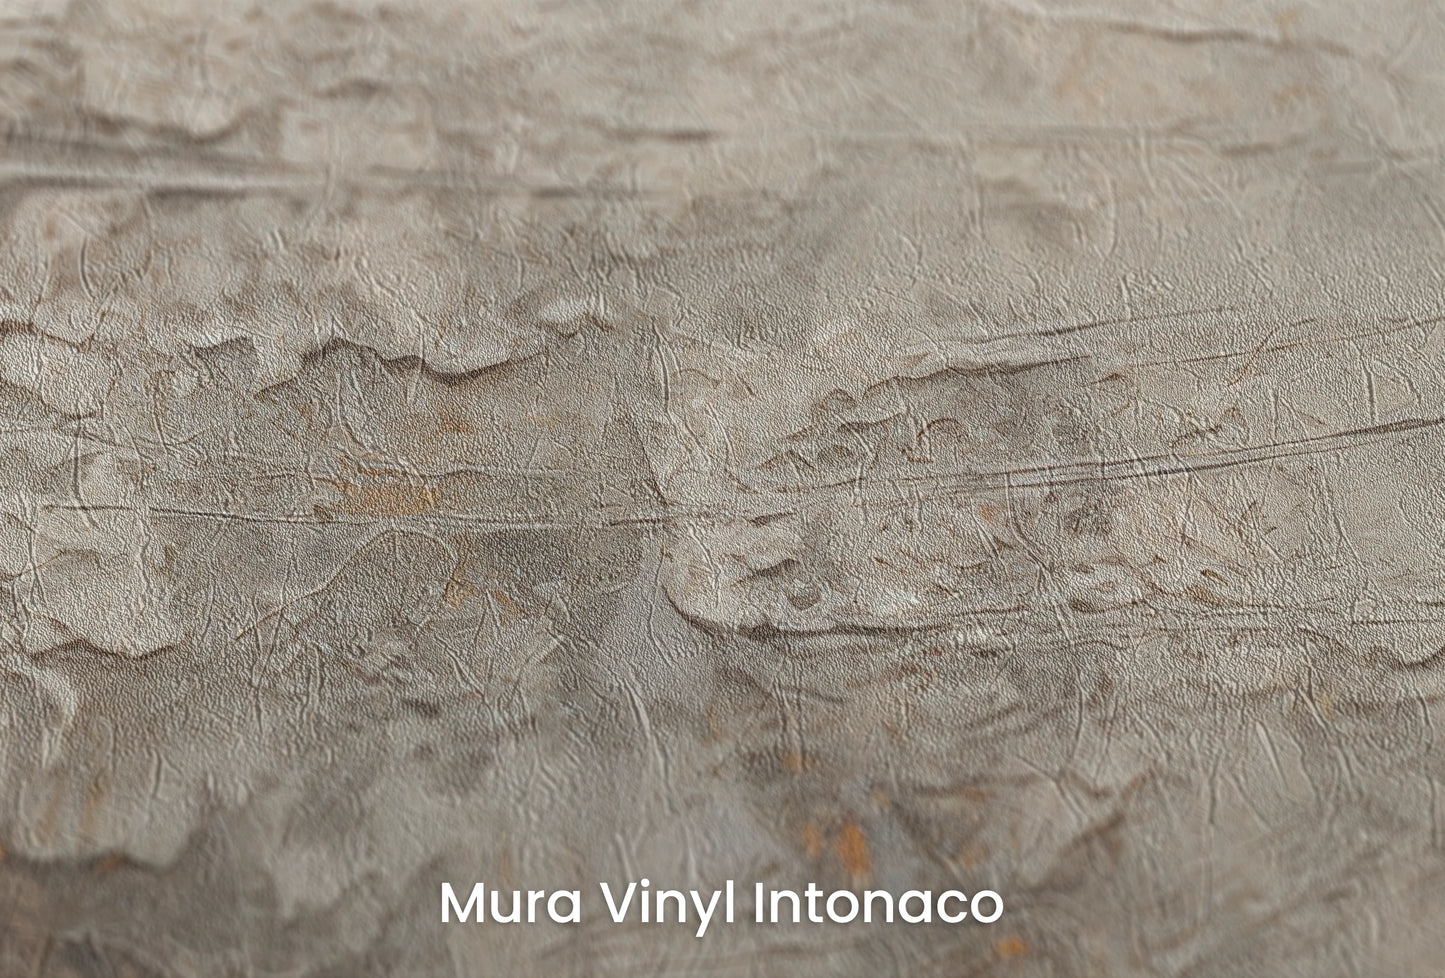 Zbliżenie na artystyczną fototapetę o nazwie Mercury's Veins na podłożu Mura Vinyl Intonaco - struktura tartego tynku.